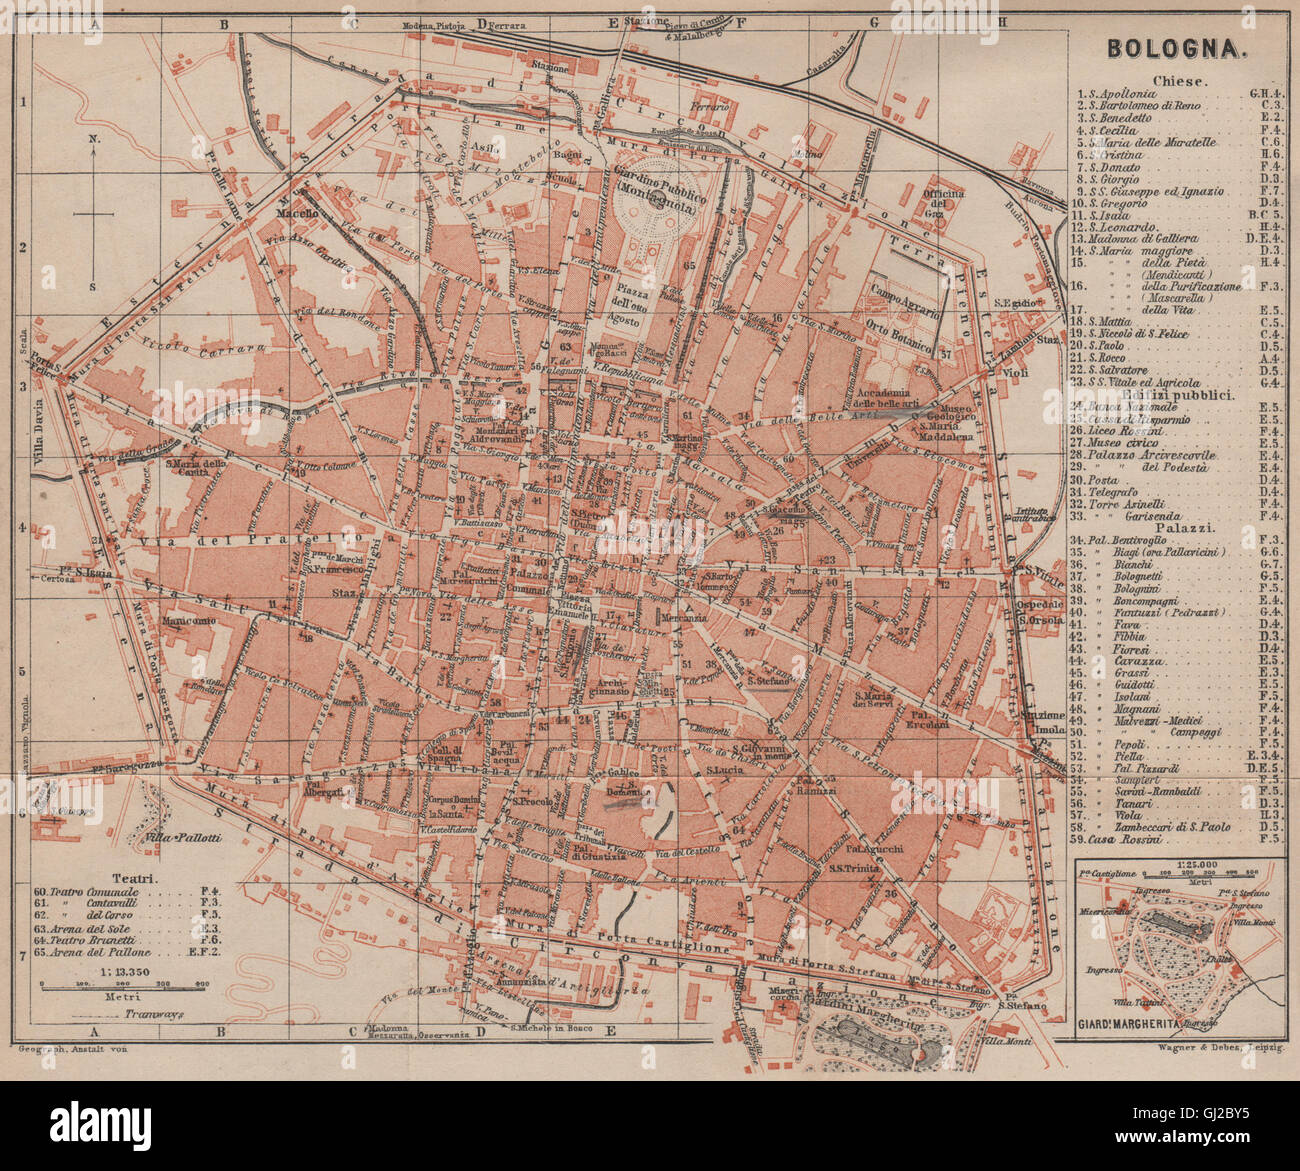 BOLOGNA città antica città del piano urbanistico di pianoforte. Mappa Italia,  1899 Foto stock - Alamy